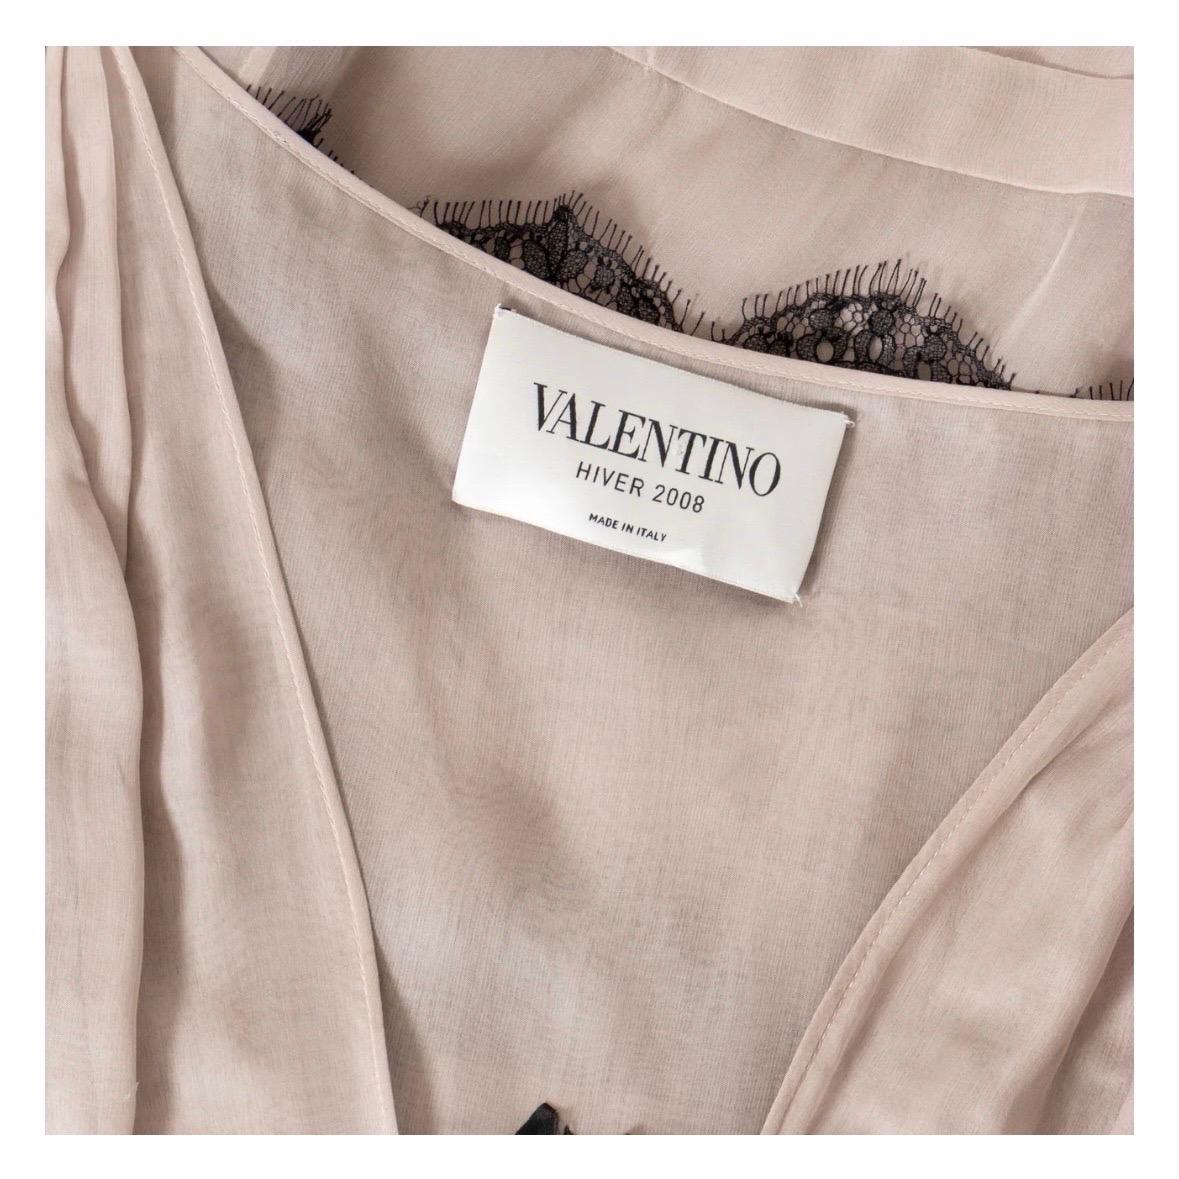 Valentino Lace Chiffon Sheath Dress 2008 Collection 1